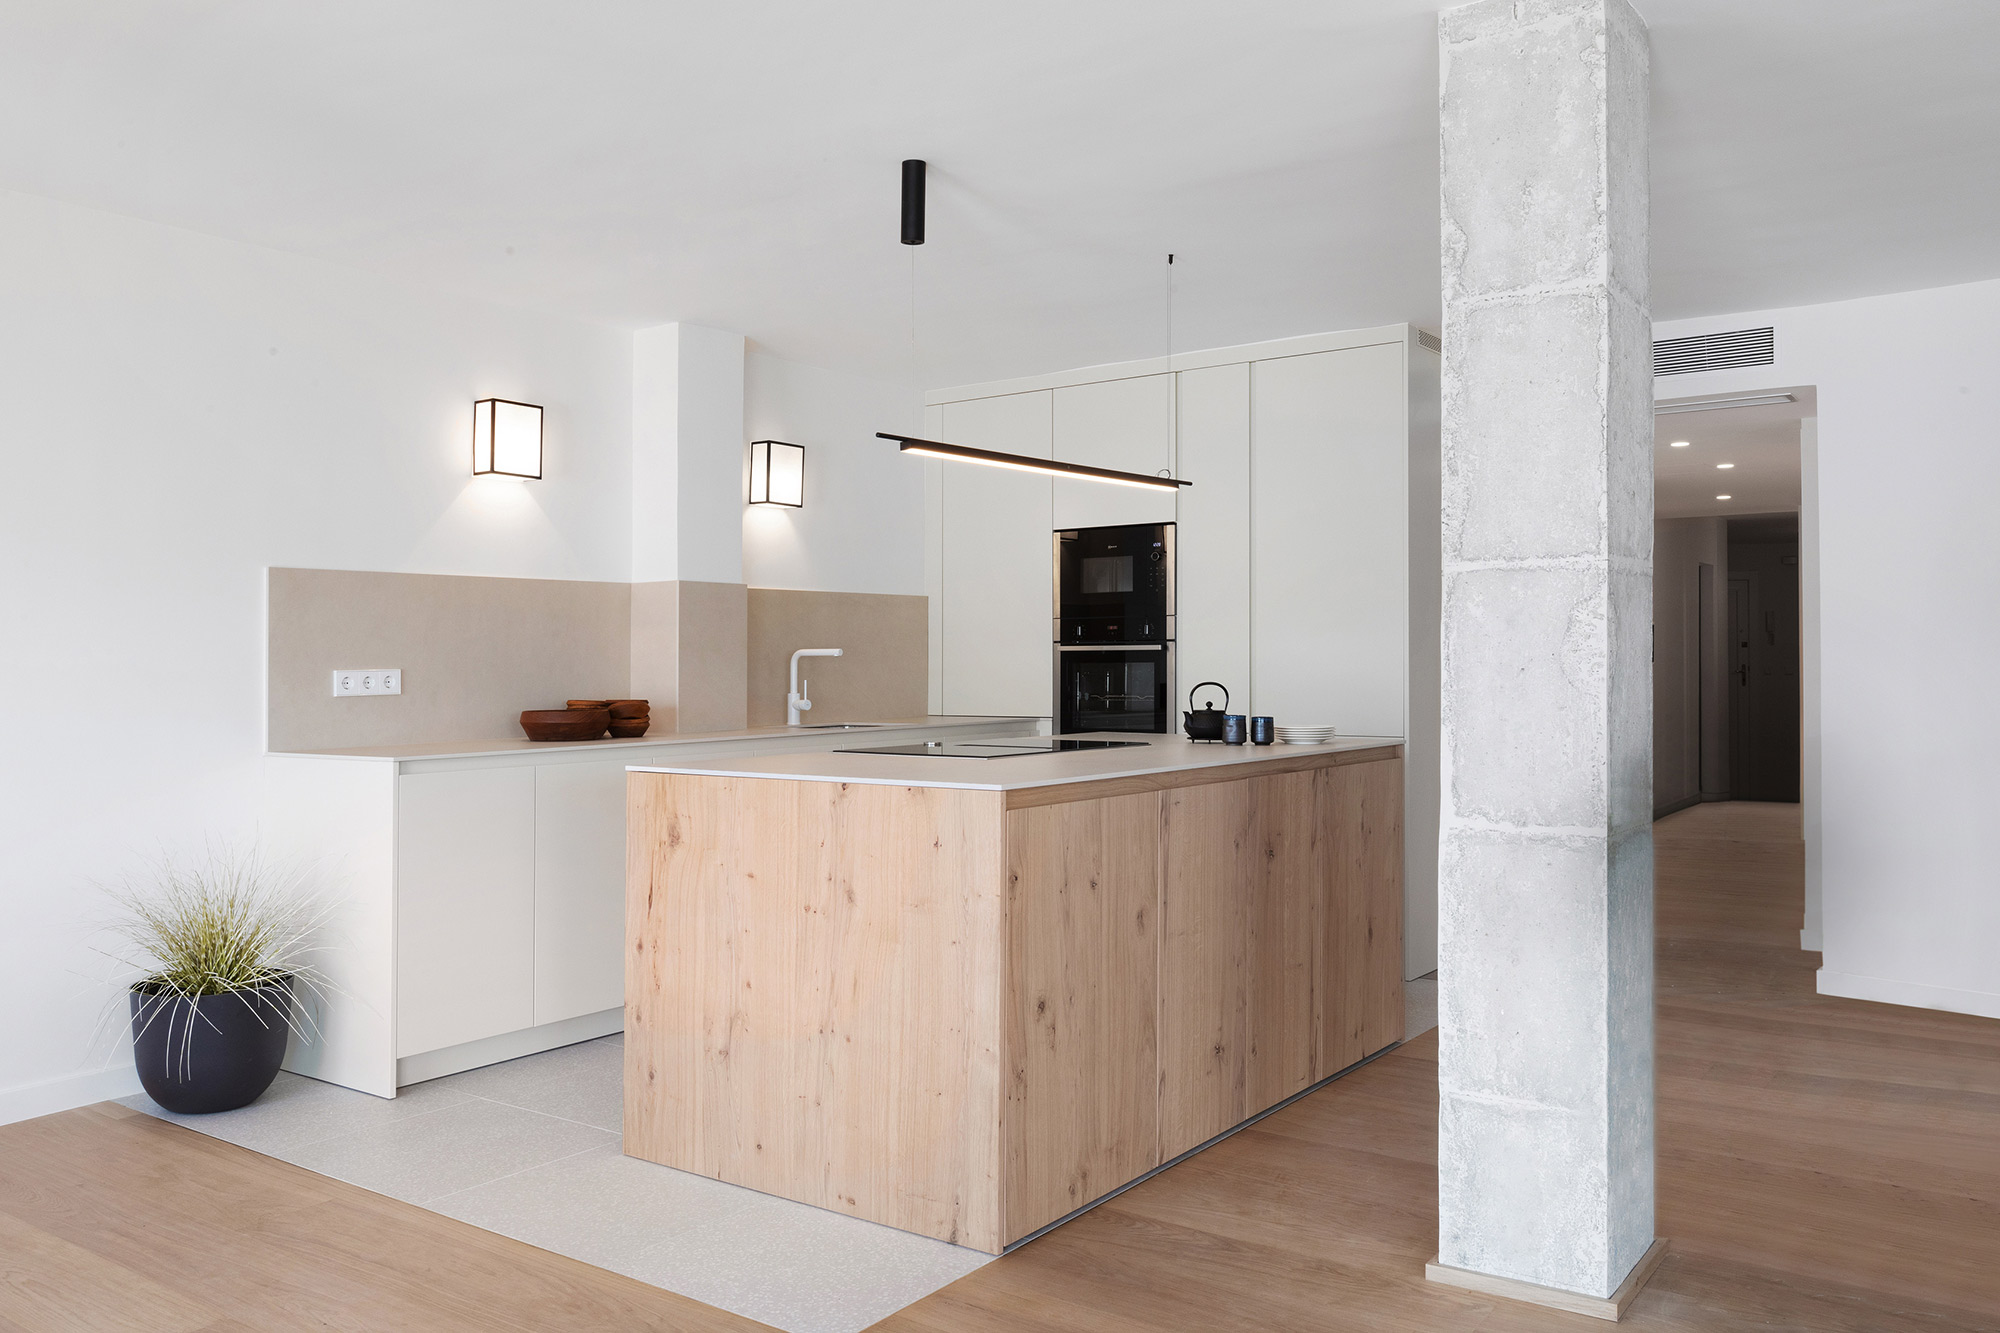 Image of Torrenova Mallorca 1 in Dekton and Silestone enhance the kitchen and bathroom design in a Tokyo home - Cosentino